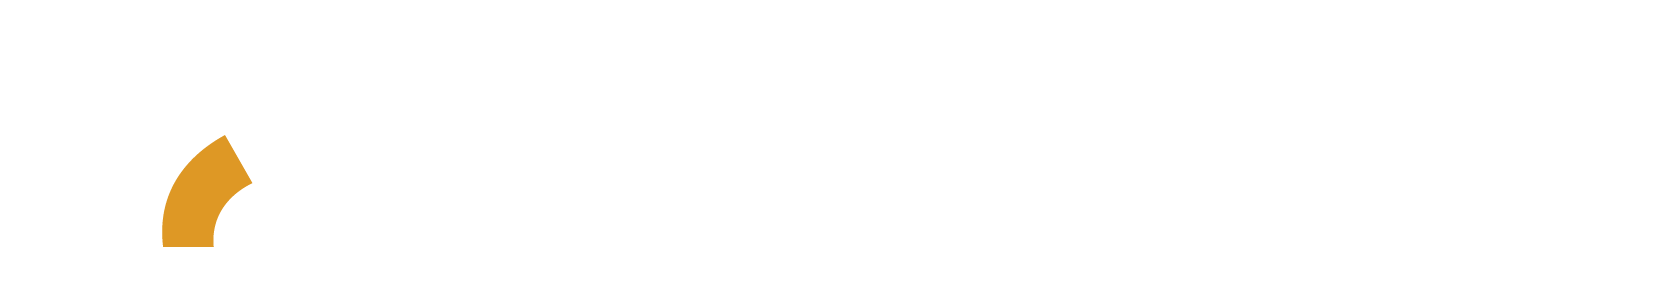 Logo american sustentável nutrients